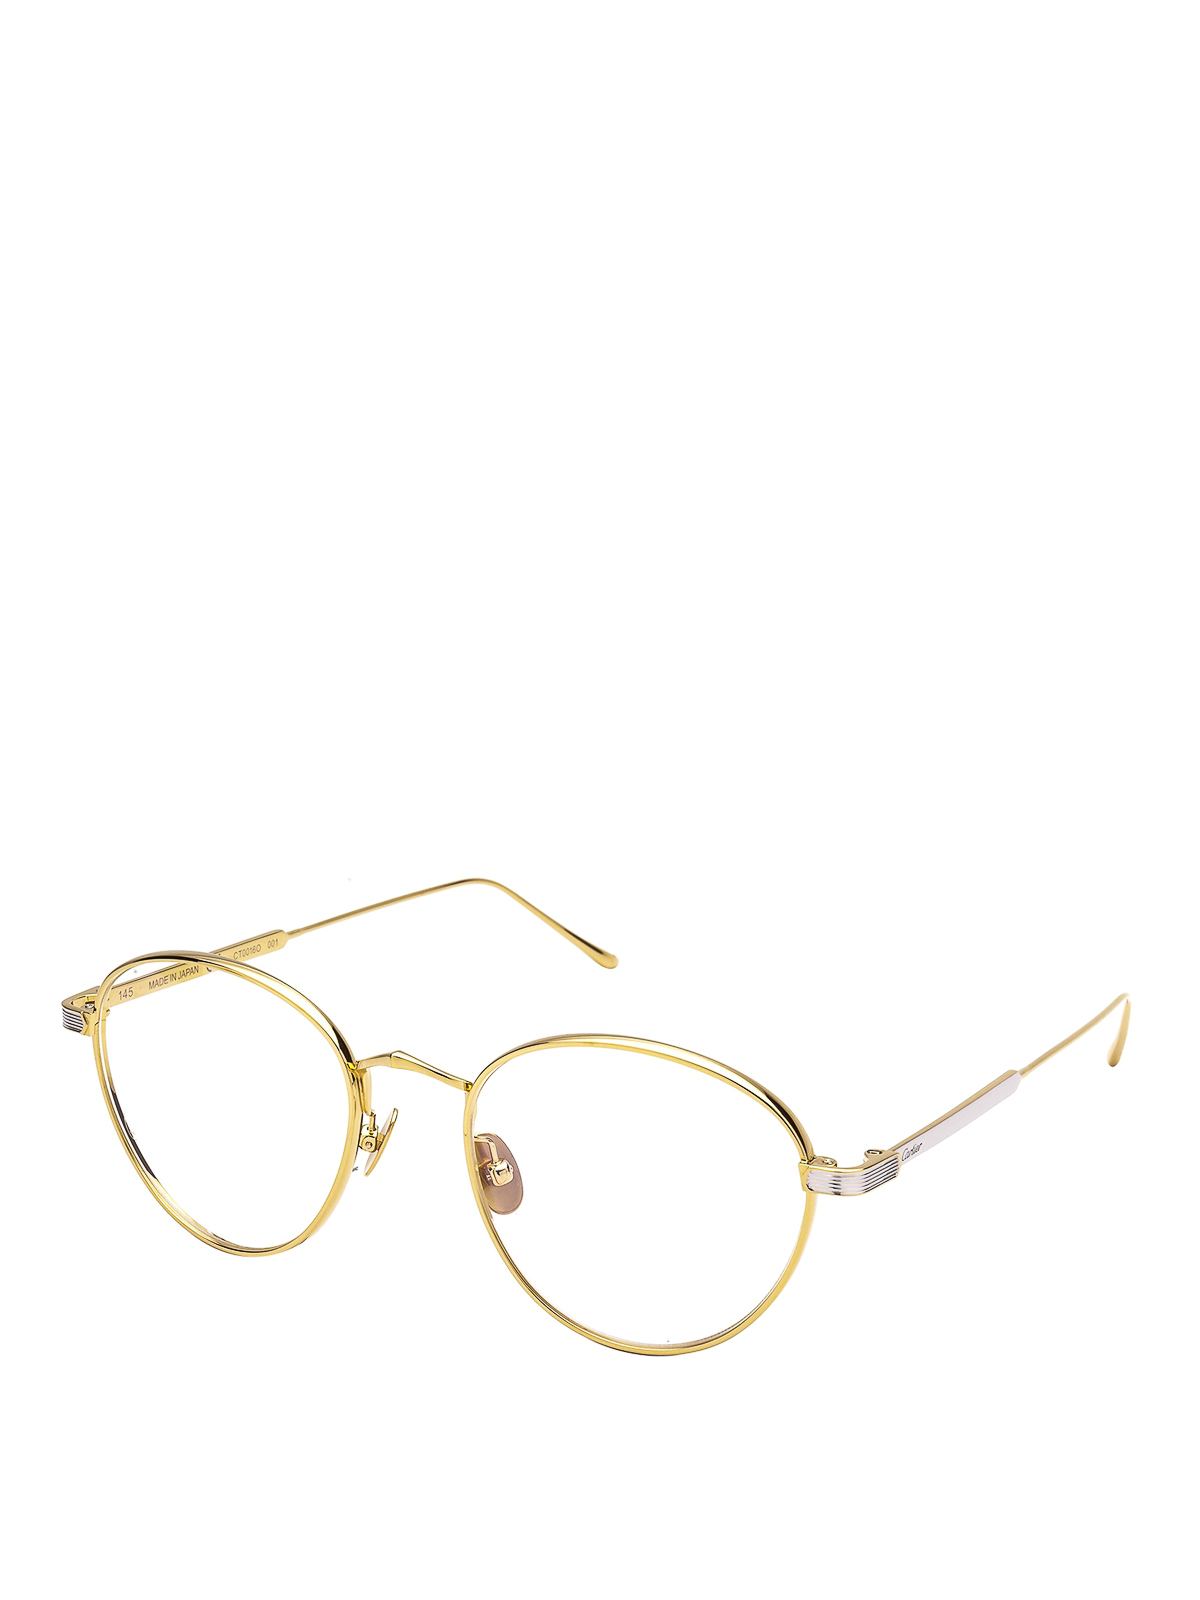 Gold-tone titanium round eyeglasses 